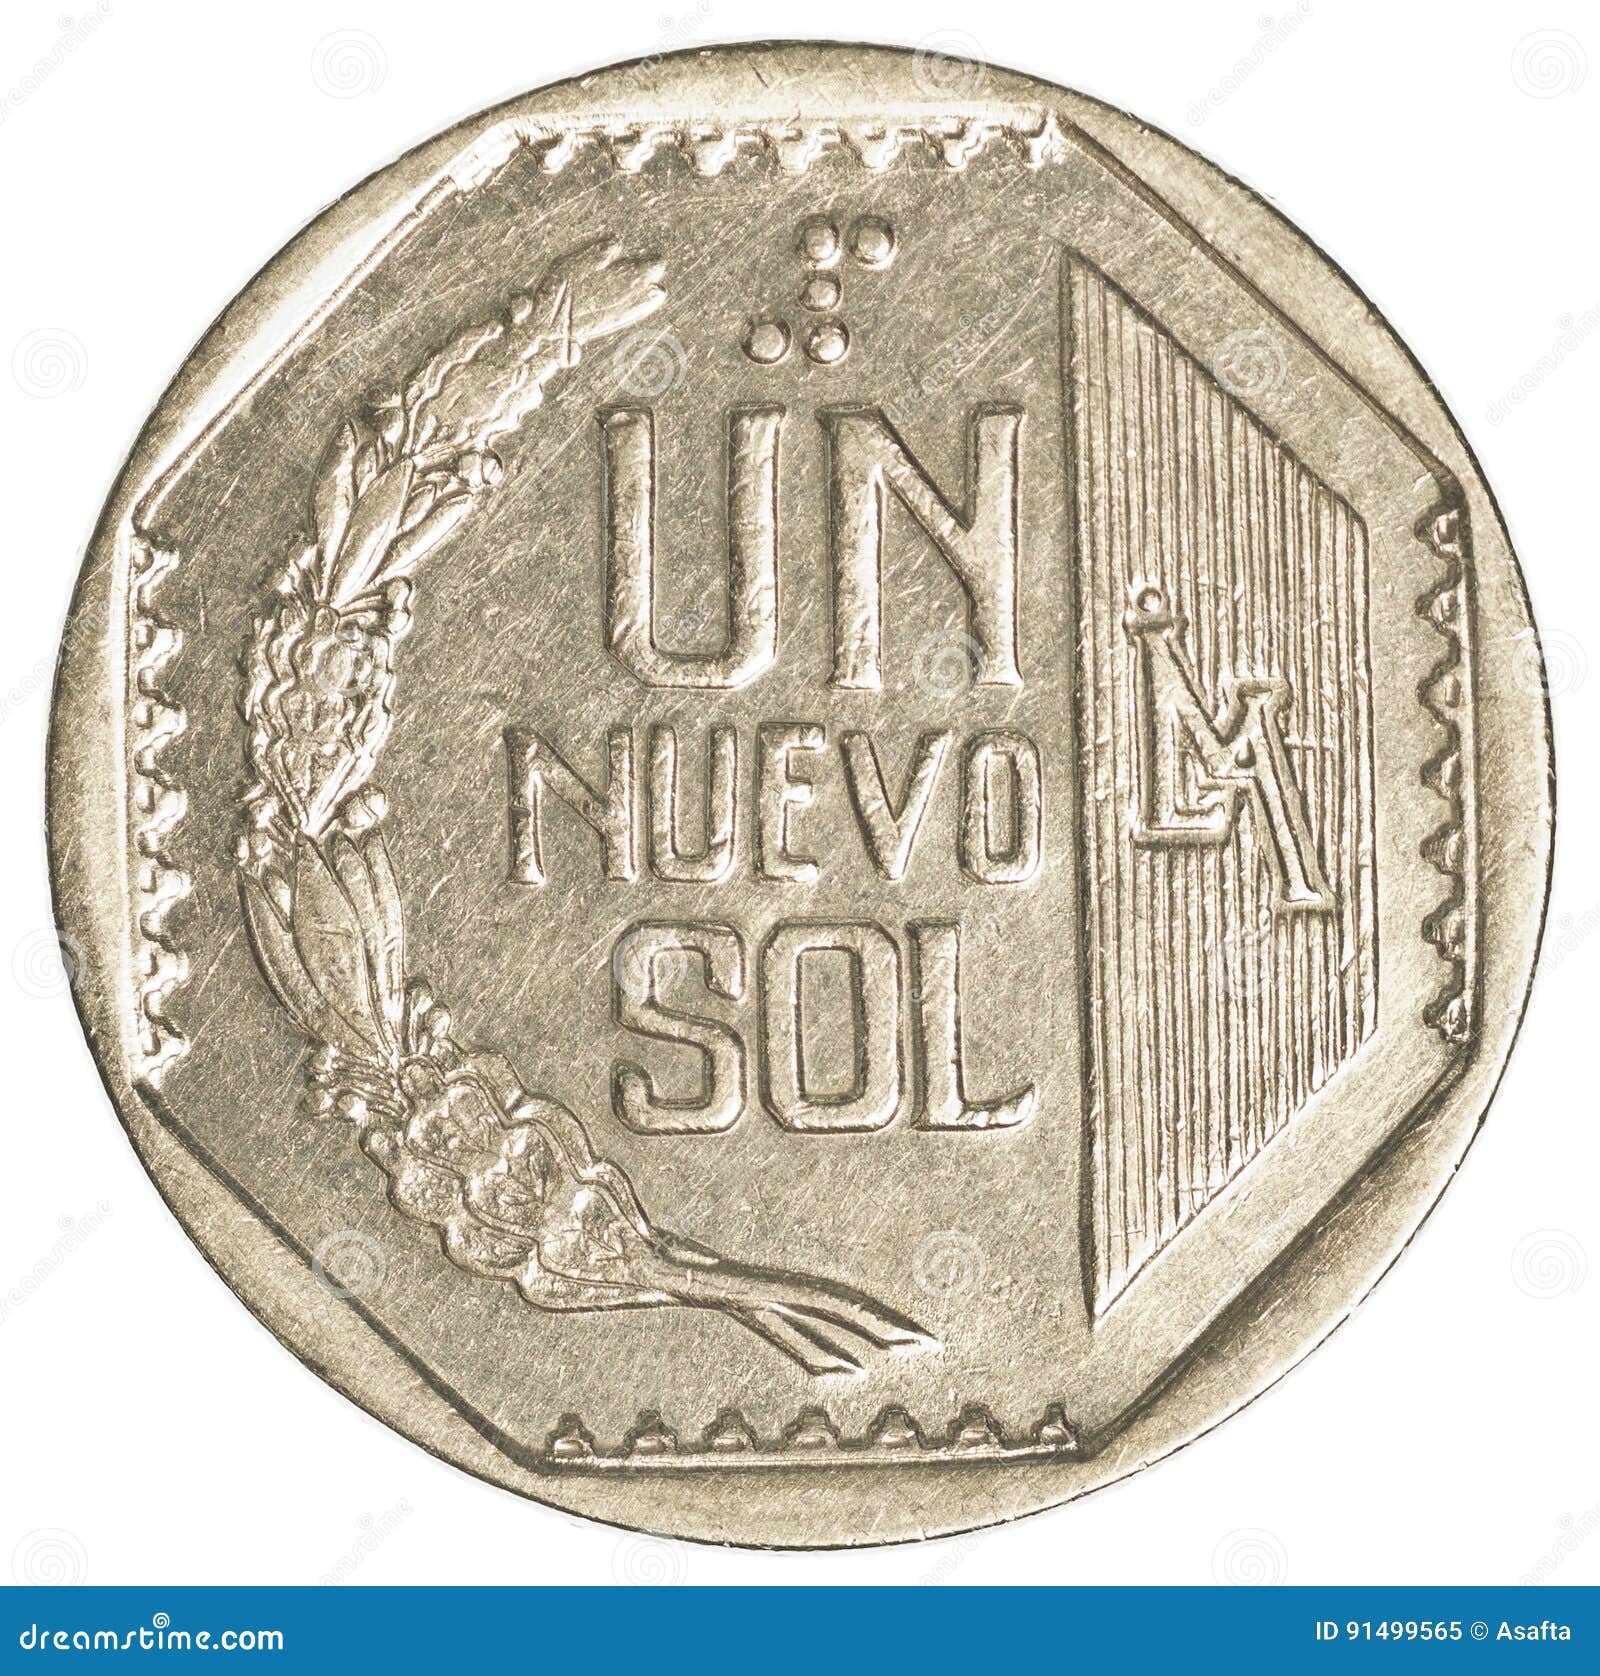 1 peruvian nuevo sol coin